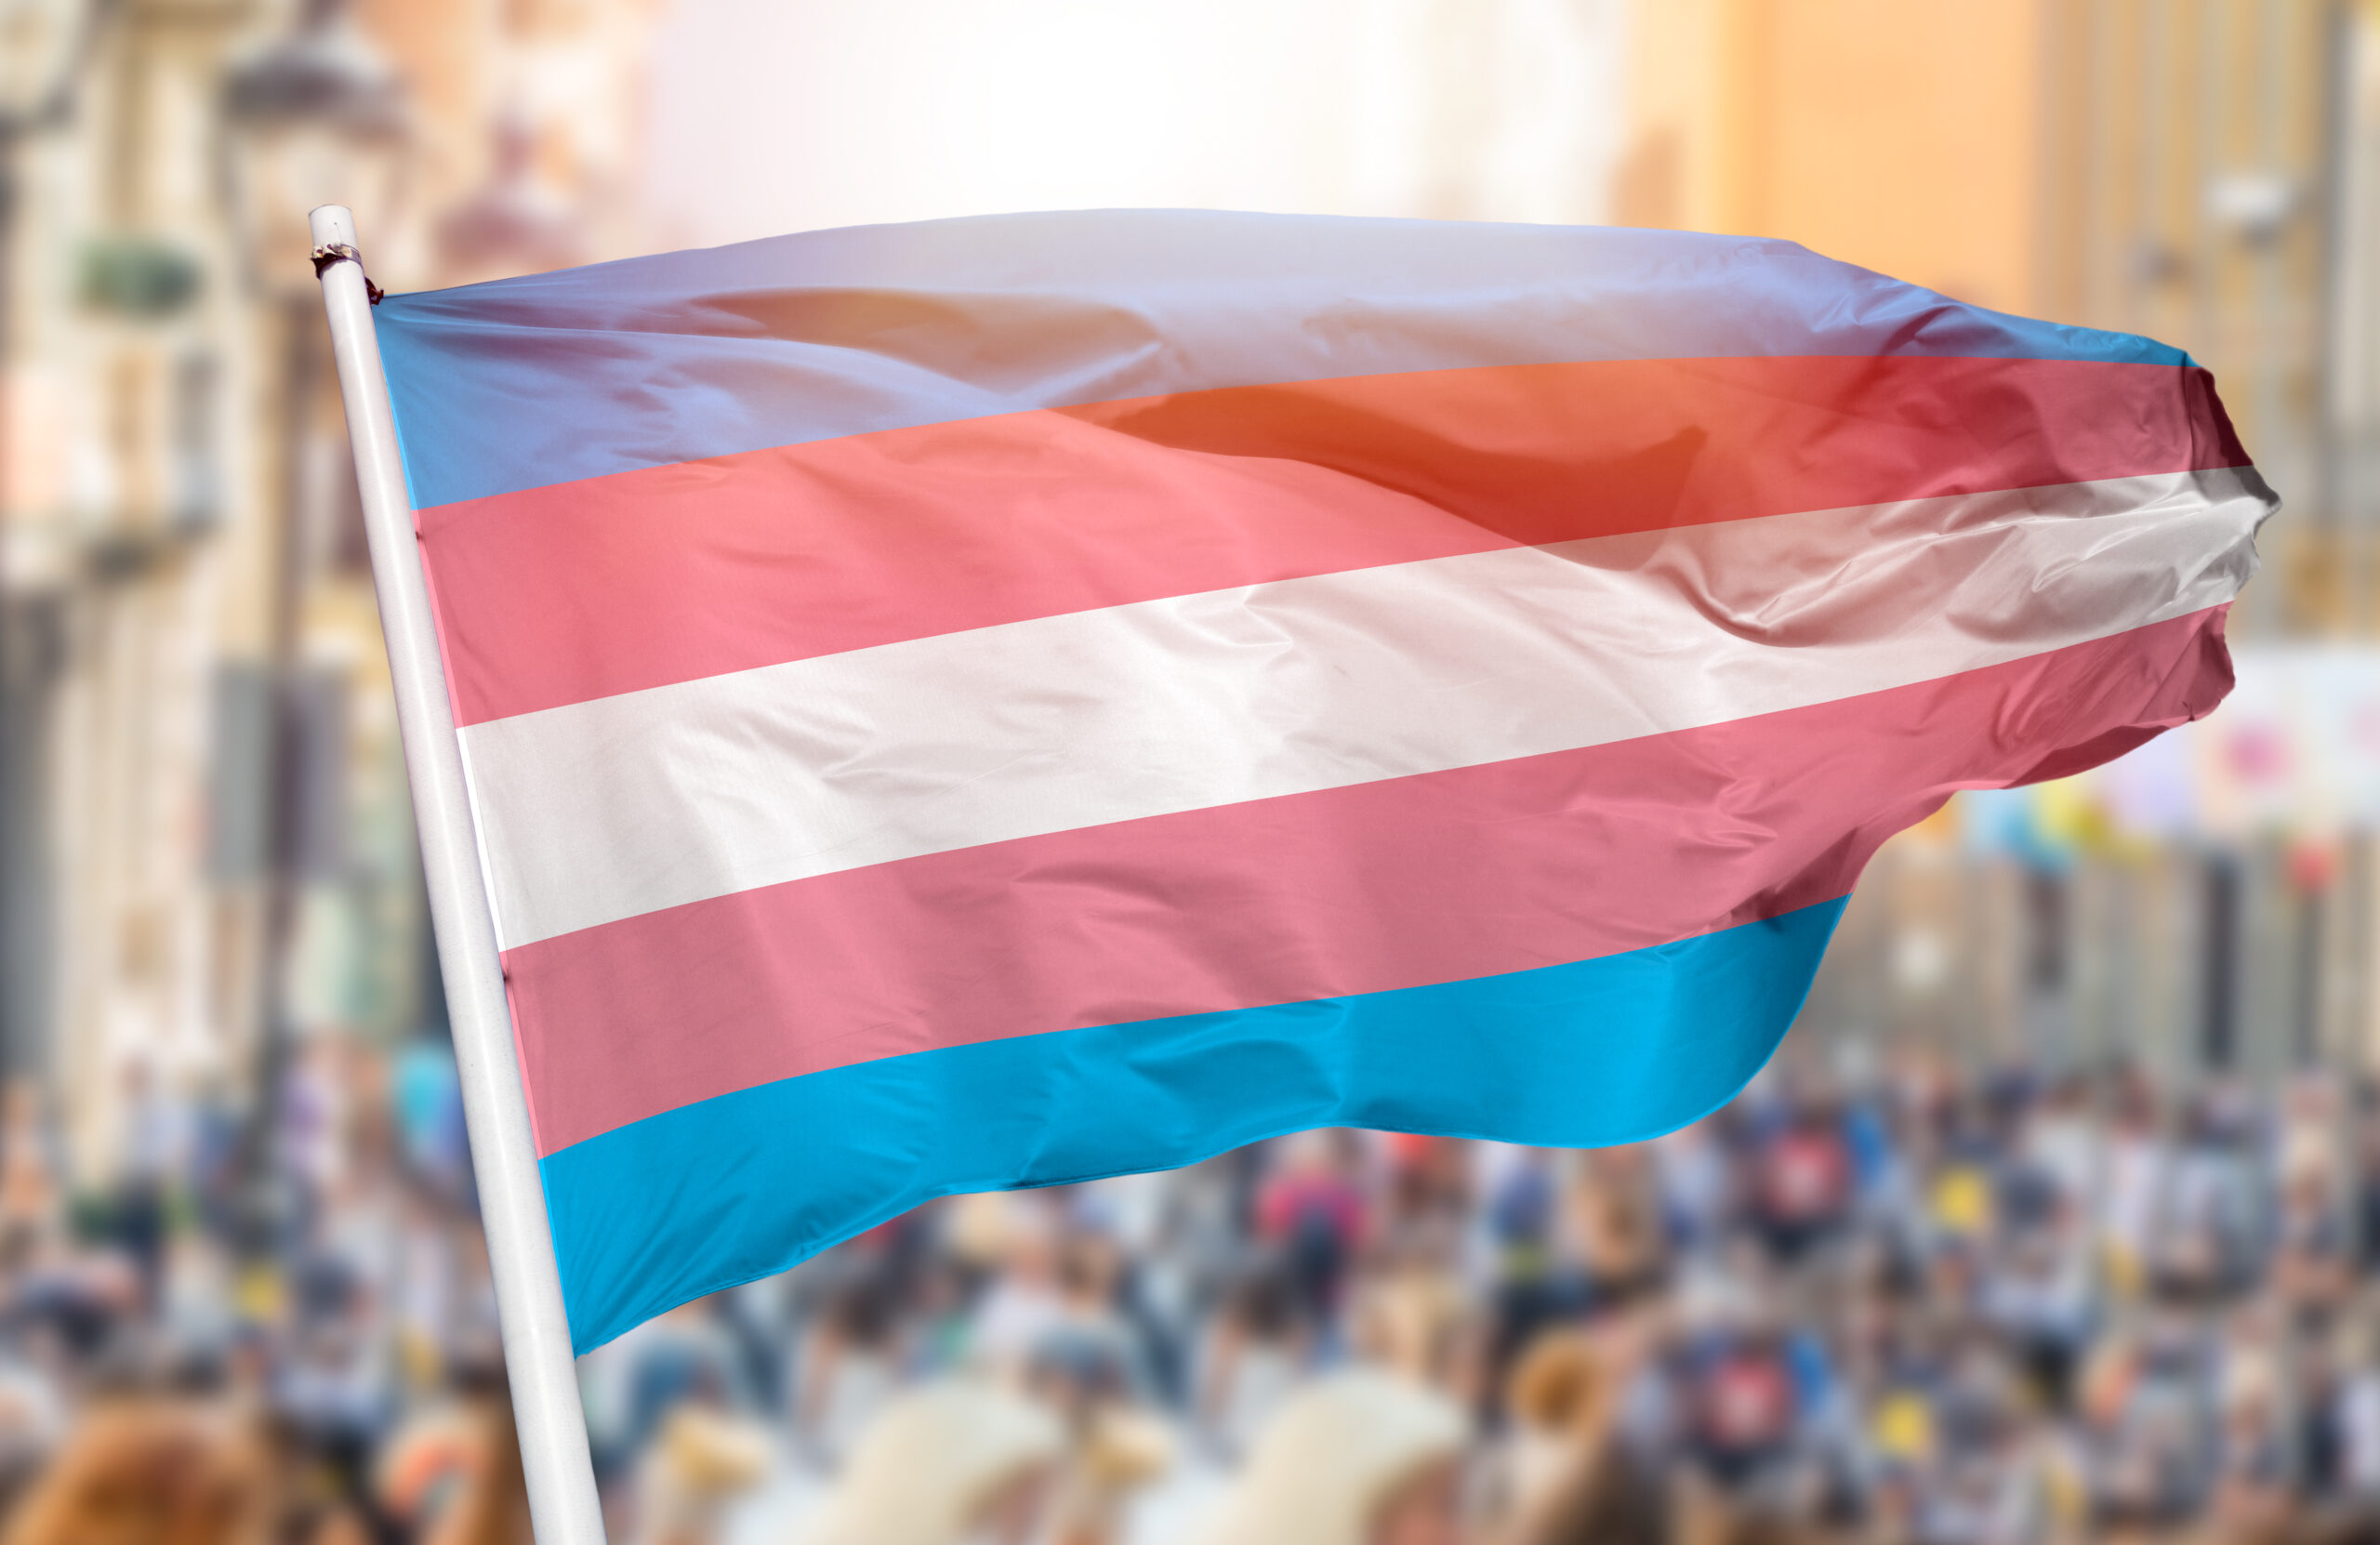 Left-wing legal groups support transgender procedures for children.